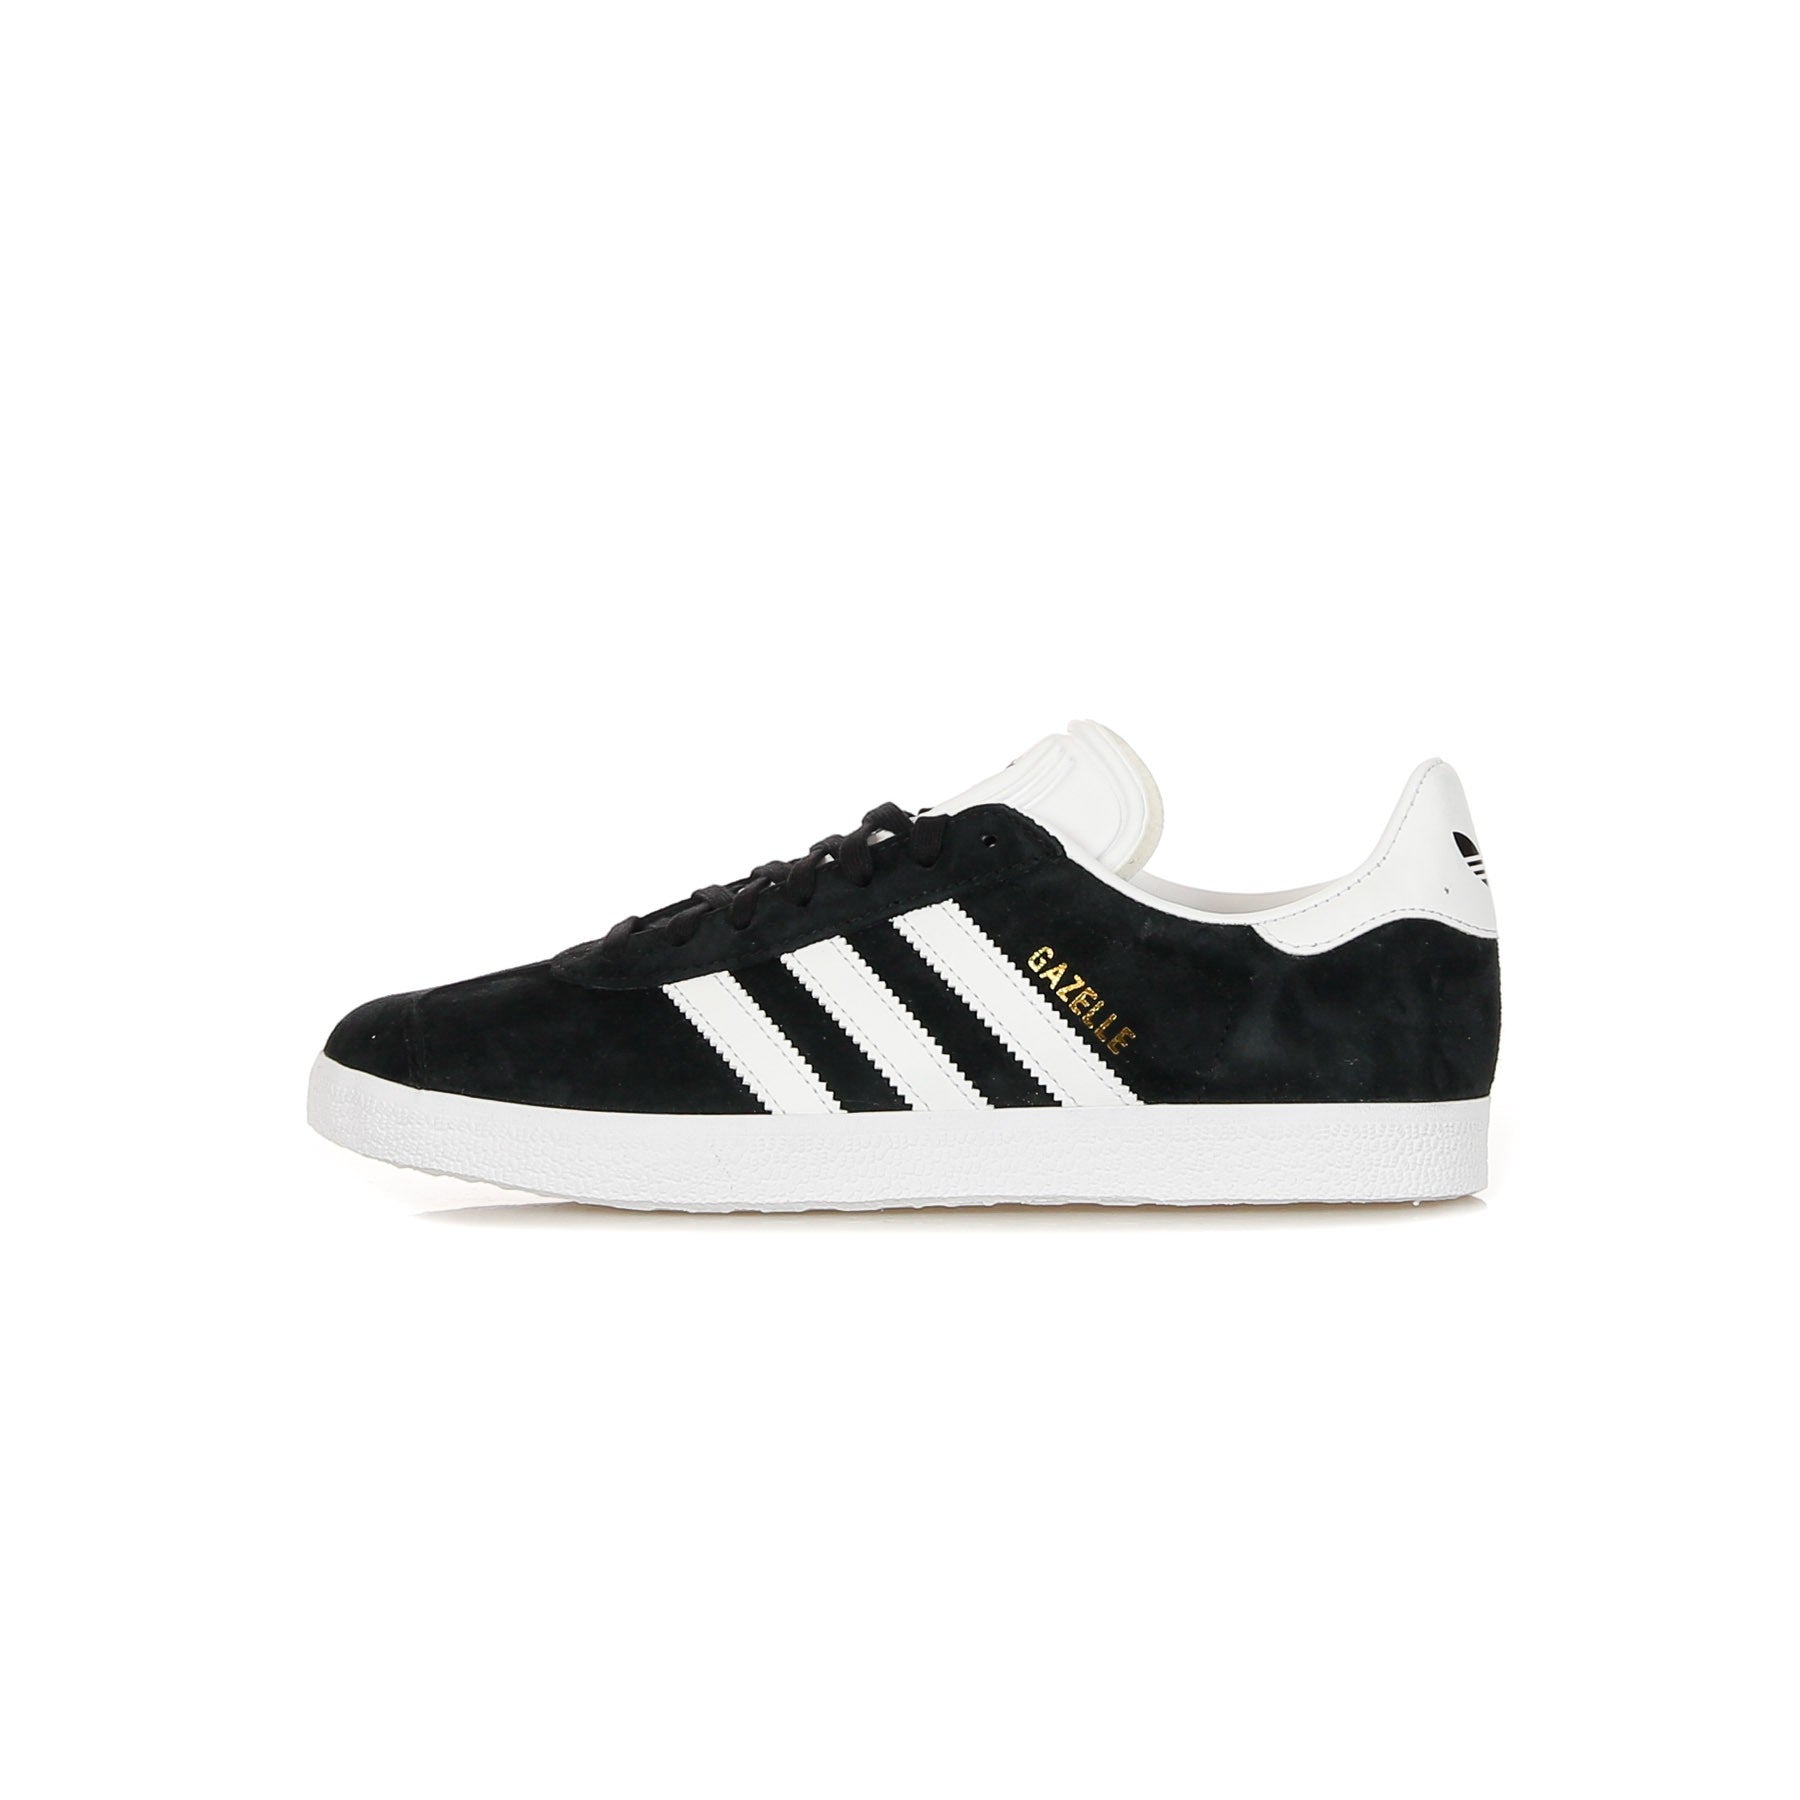 Adidas, Scarpa Bassa Uomo Gazelle, Core Black/white/clear Granite